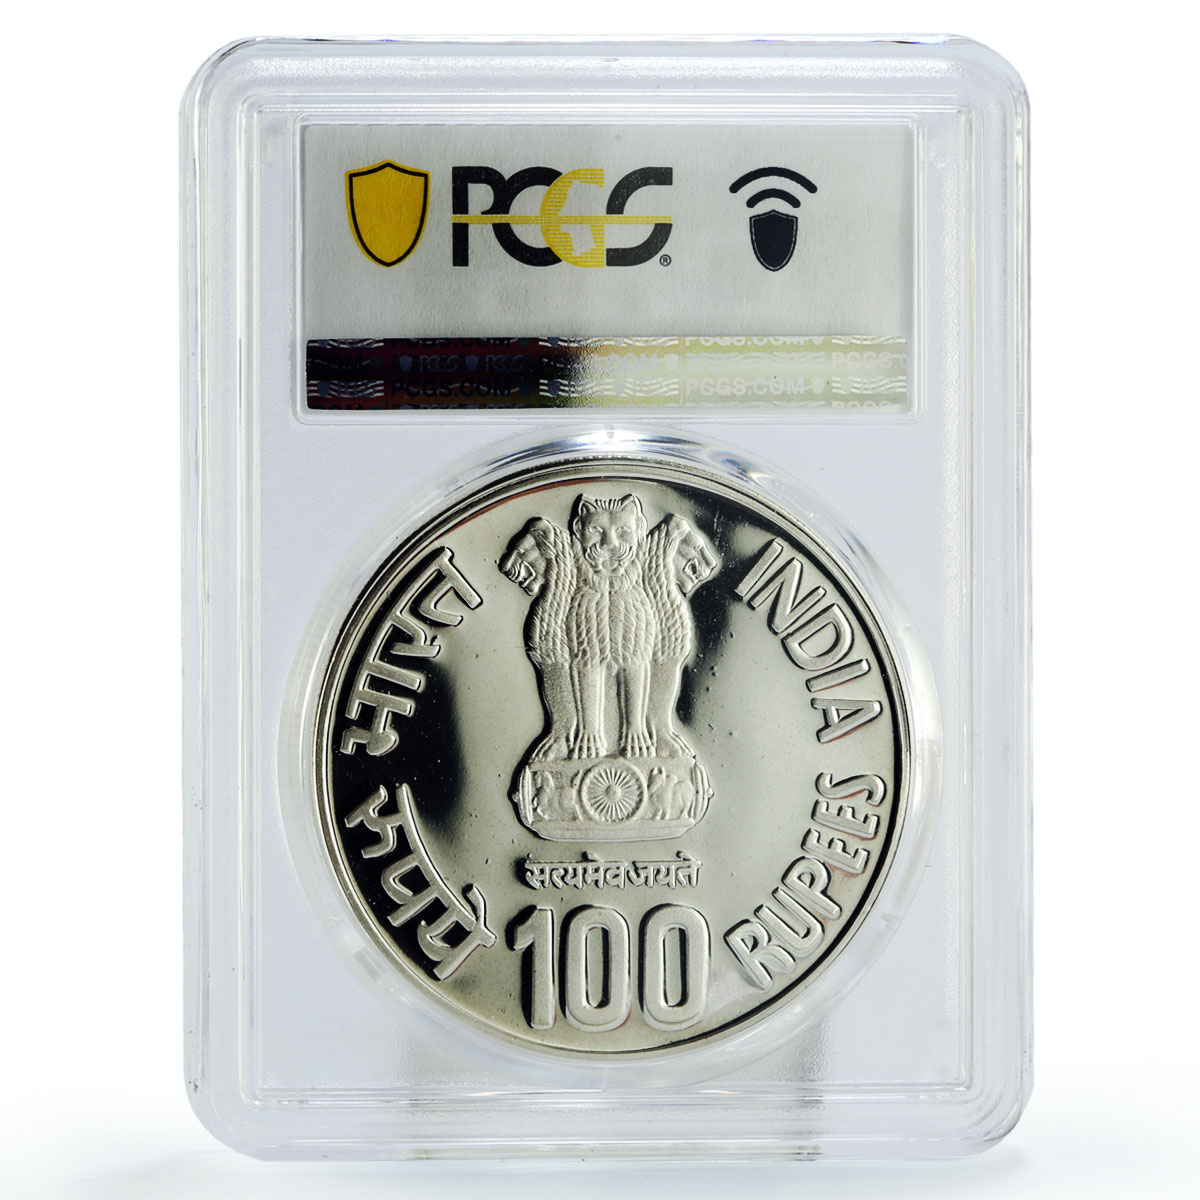 India 100 rupees Jaya Prakash Narayan Politics PR67 PCGS silver coin 2002